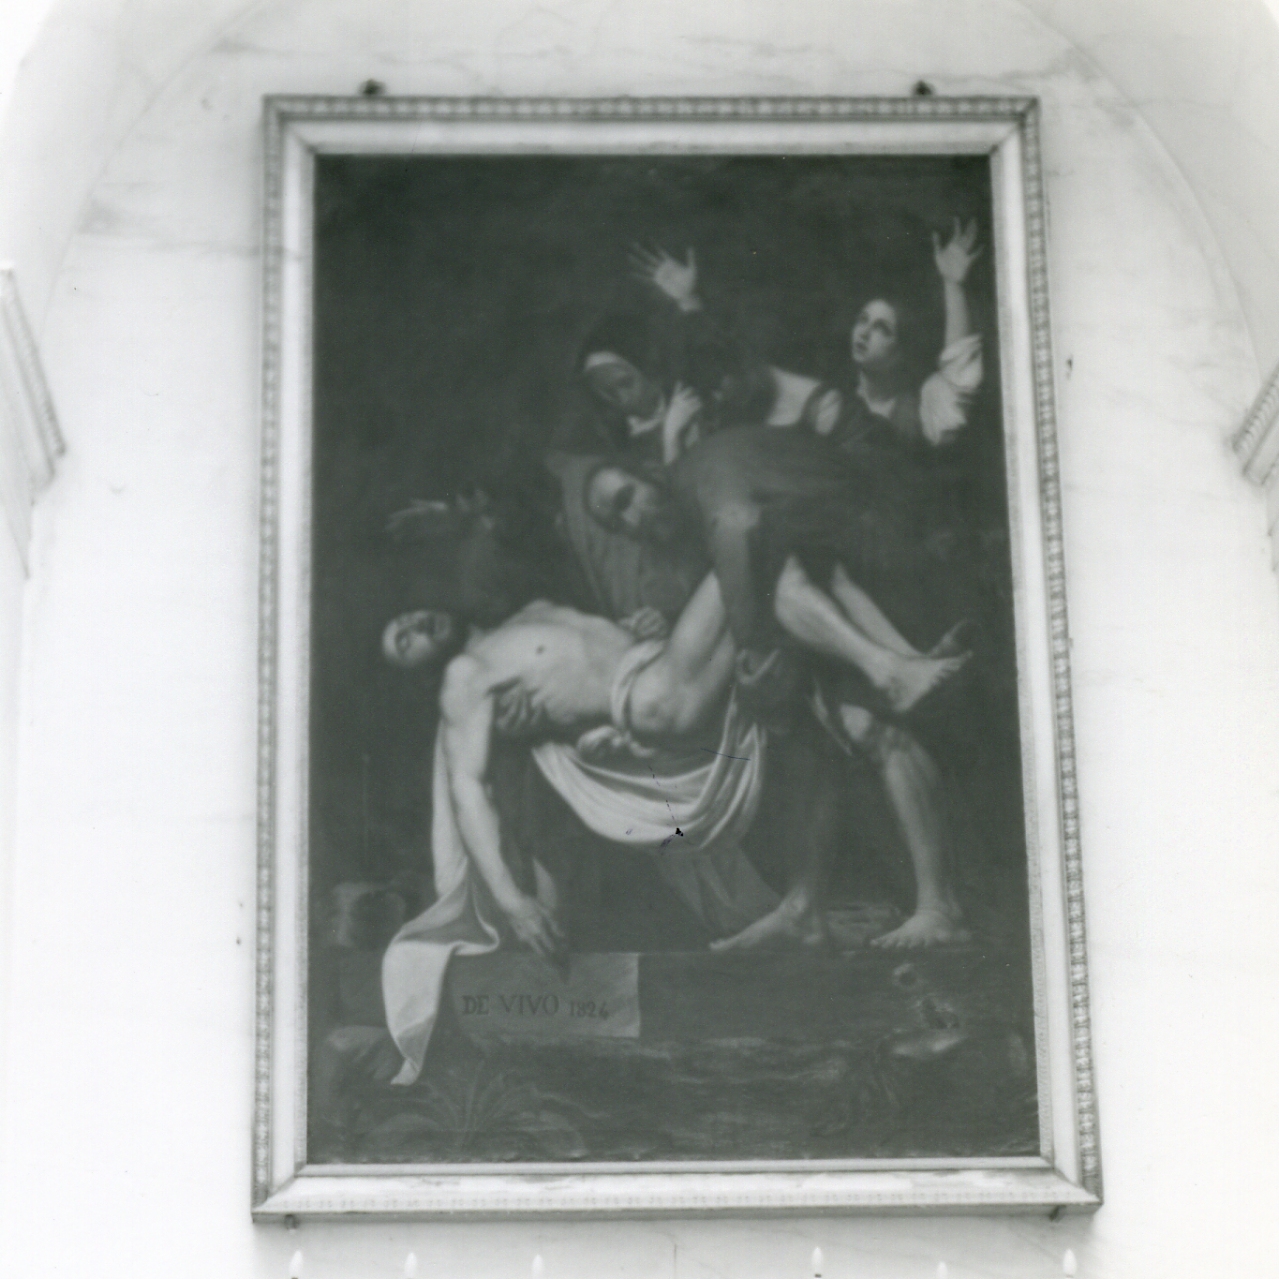 deposizione di Cristo nel sepolcro (dipinto) di De Vivo Tommaso (sec. XIX)